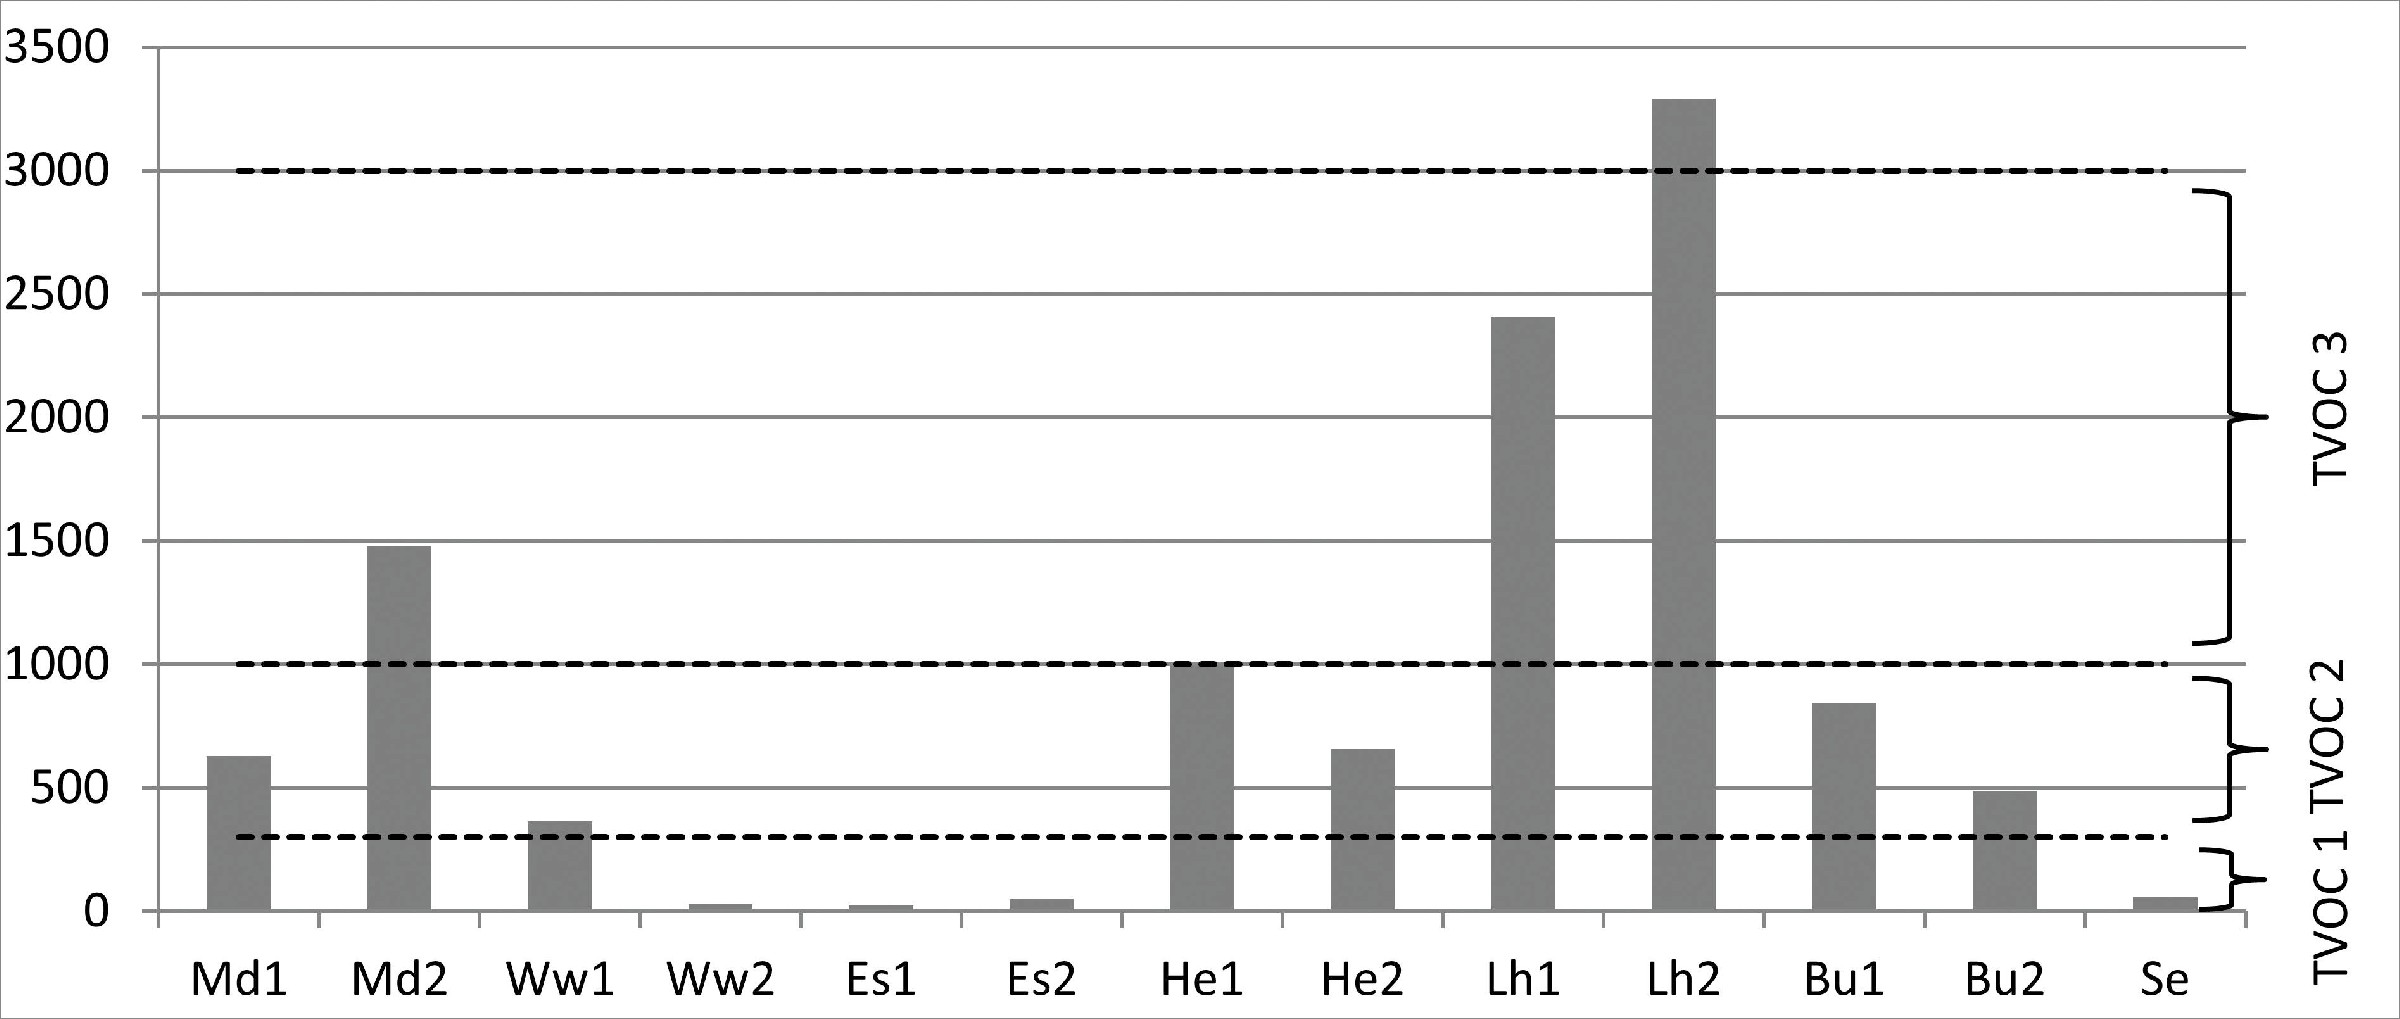 Bild 1. TVOC-Konzentration der untersuchten Räume in μg/m3. Quelle: Landesamt für soziale Dienste Schleswig-Holstein